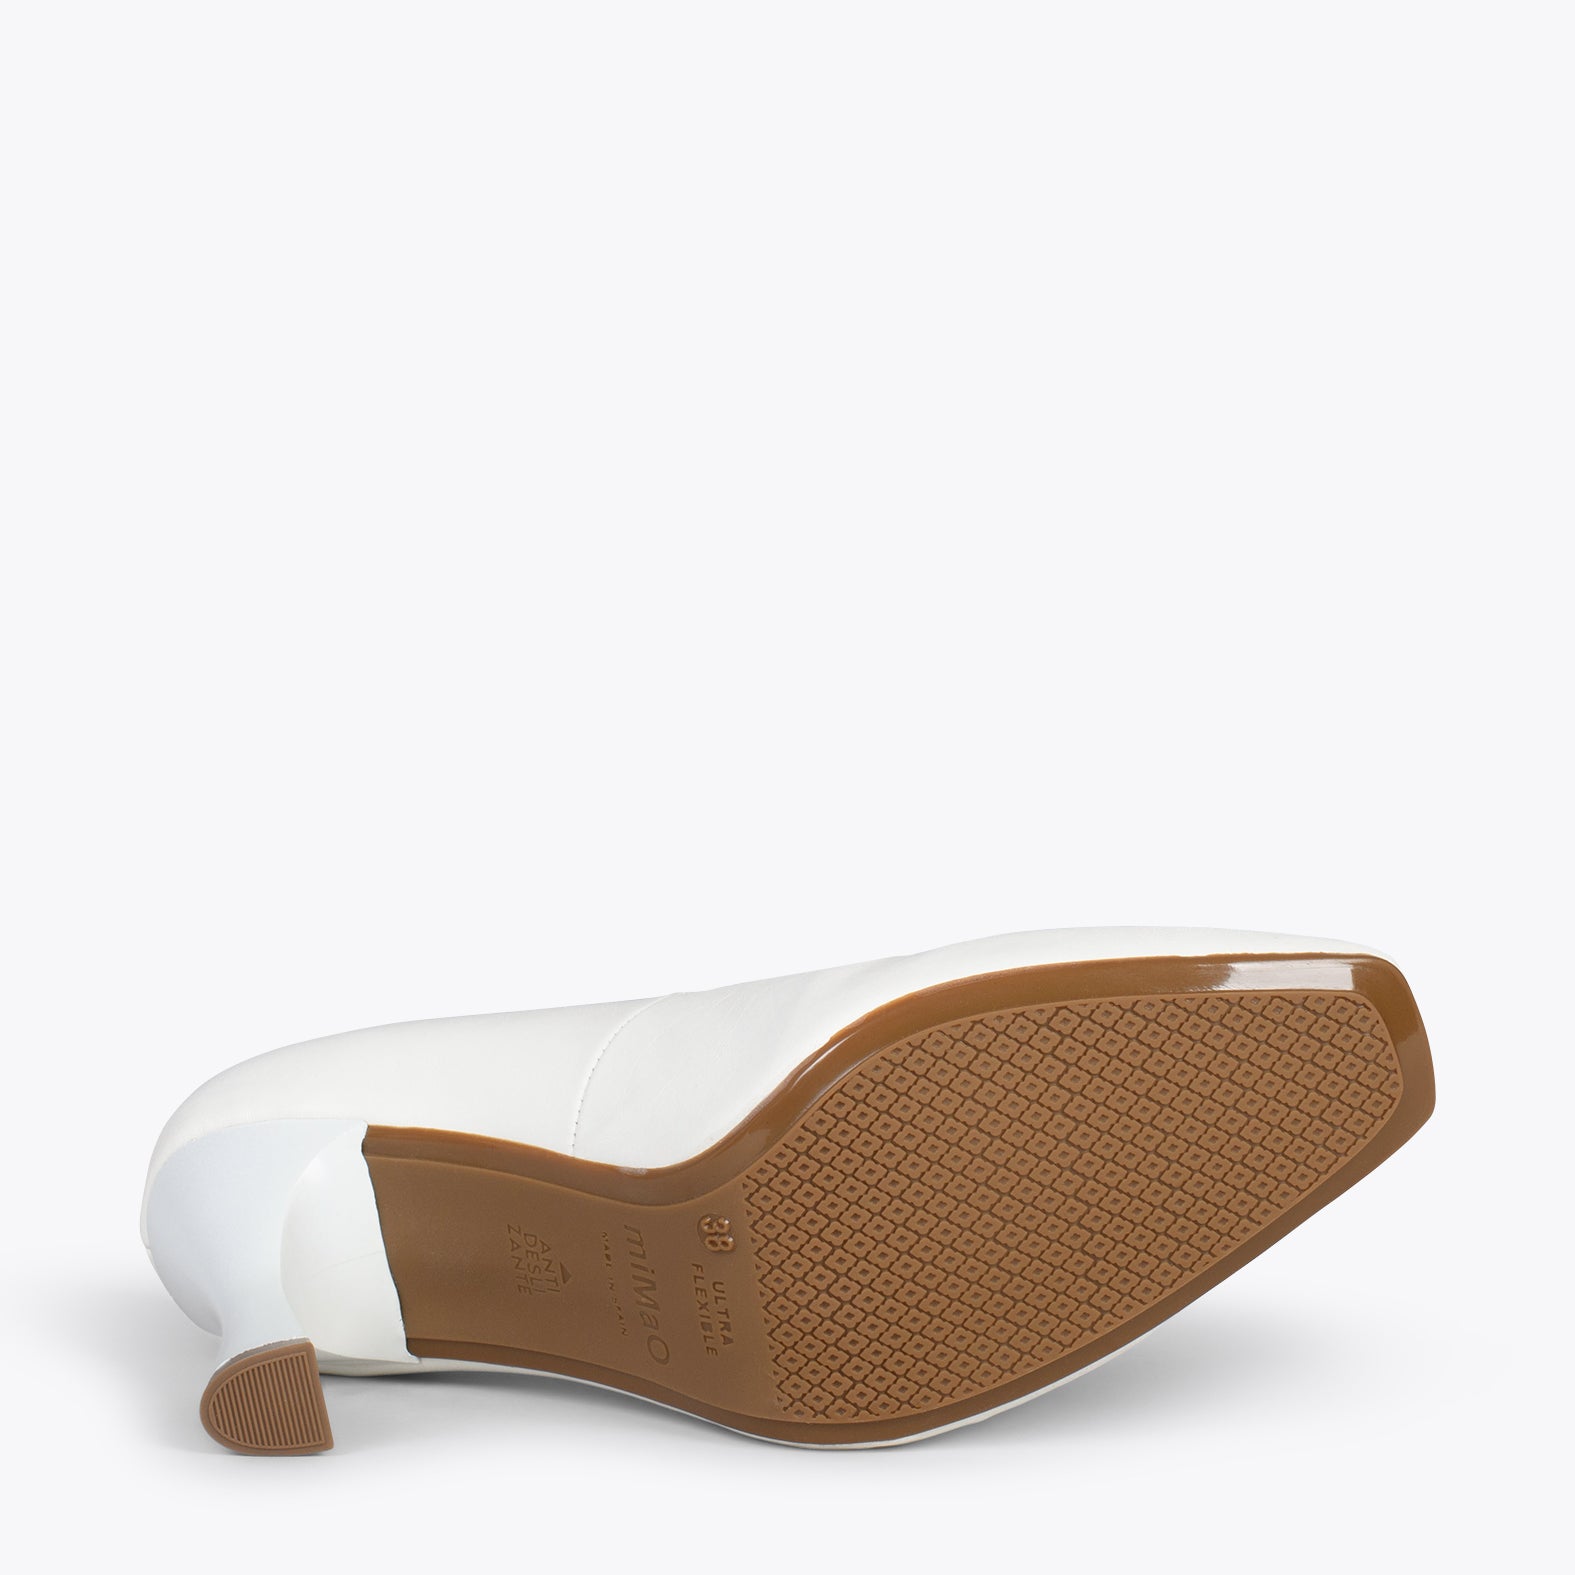 URBAN GLAM CUADRADO – Zapatos de tacón de campana BLANCO